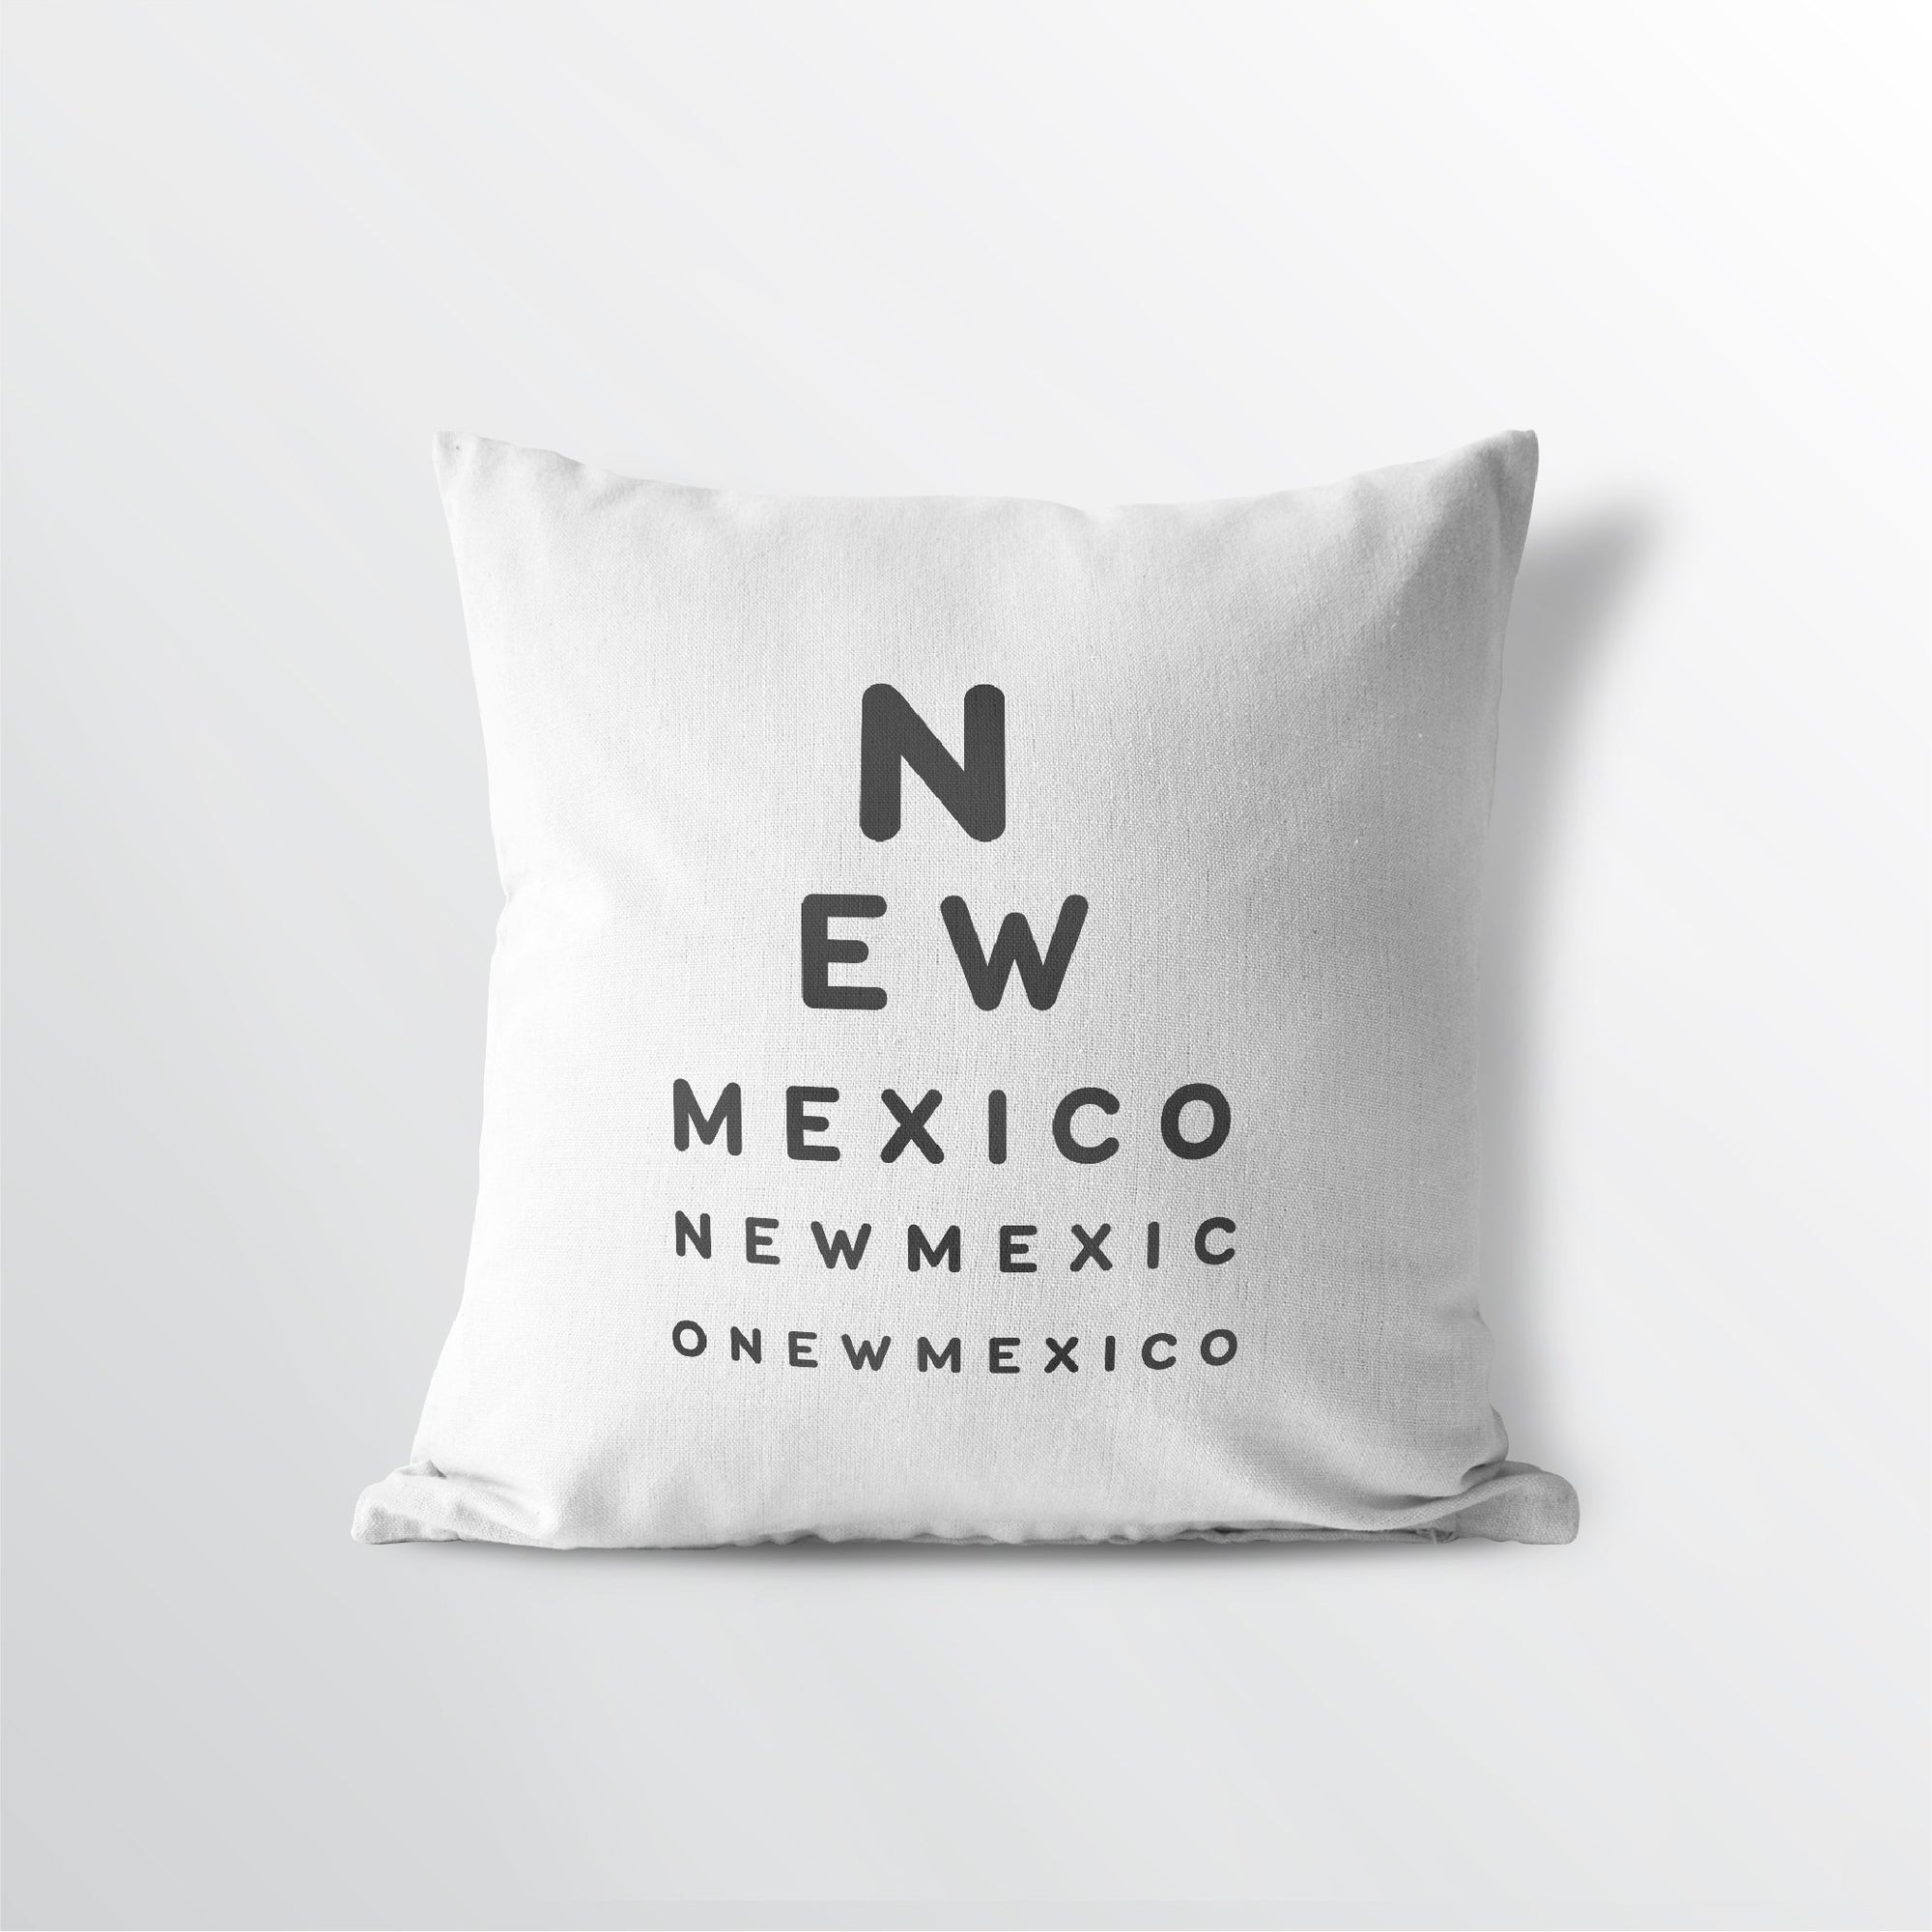 New Mexico "Eye Exam" Throw Pillow